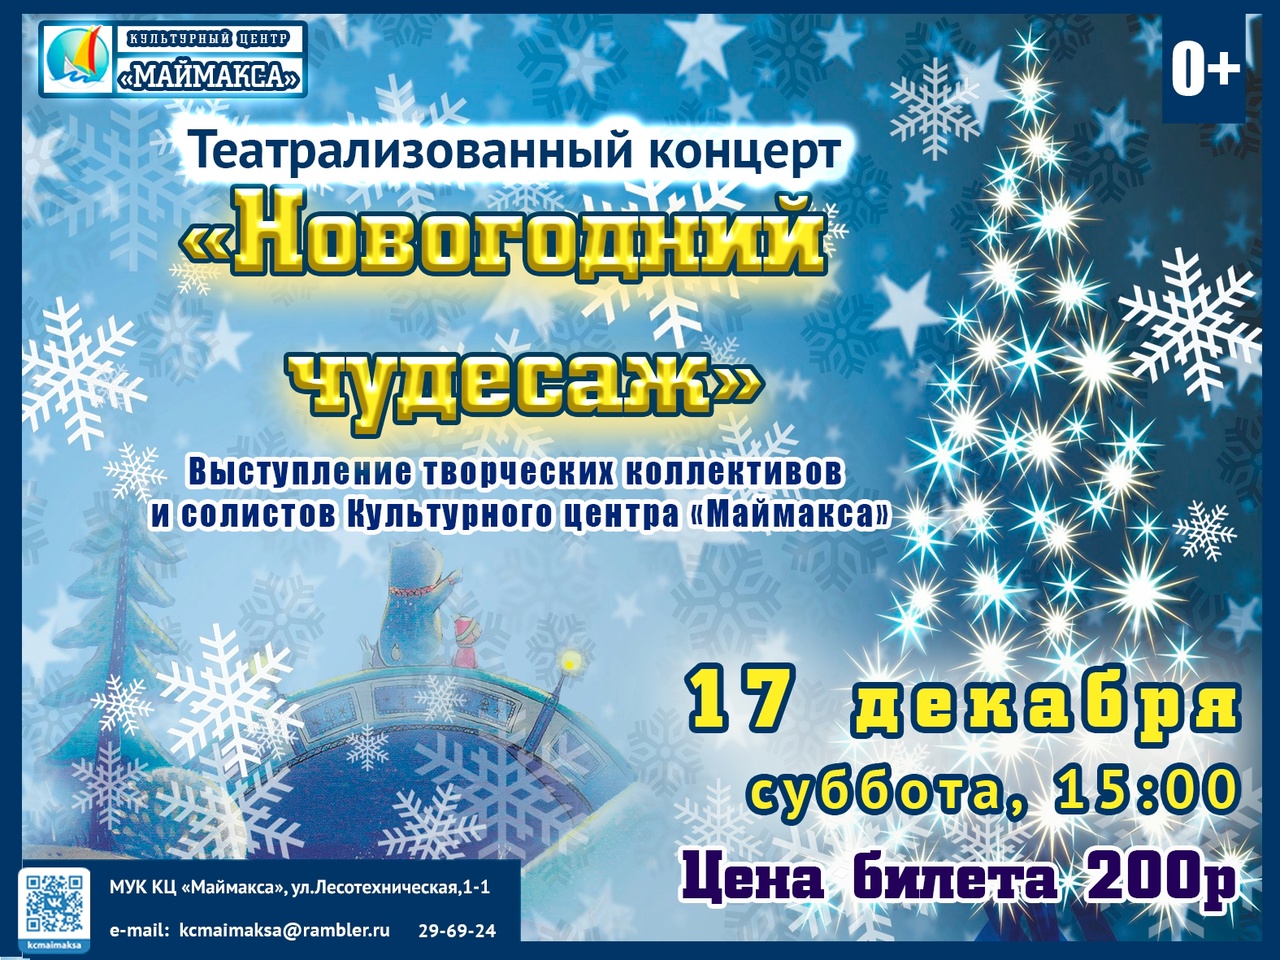 Театрализованный концерт "Новогодний чудесаж"